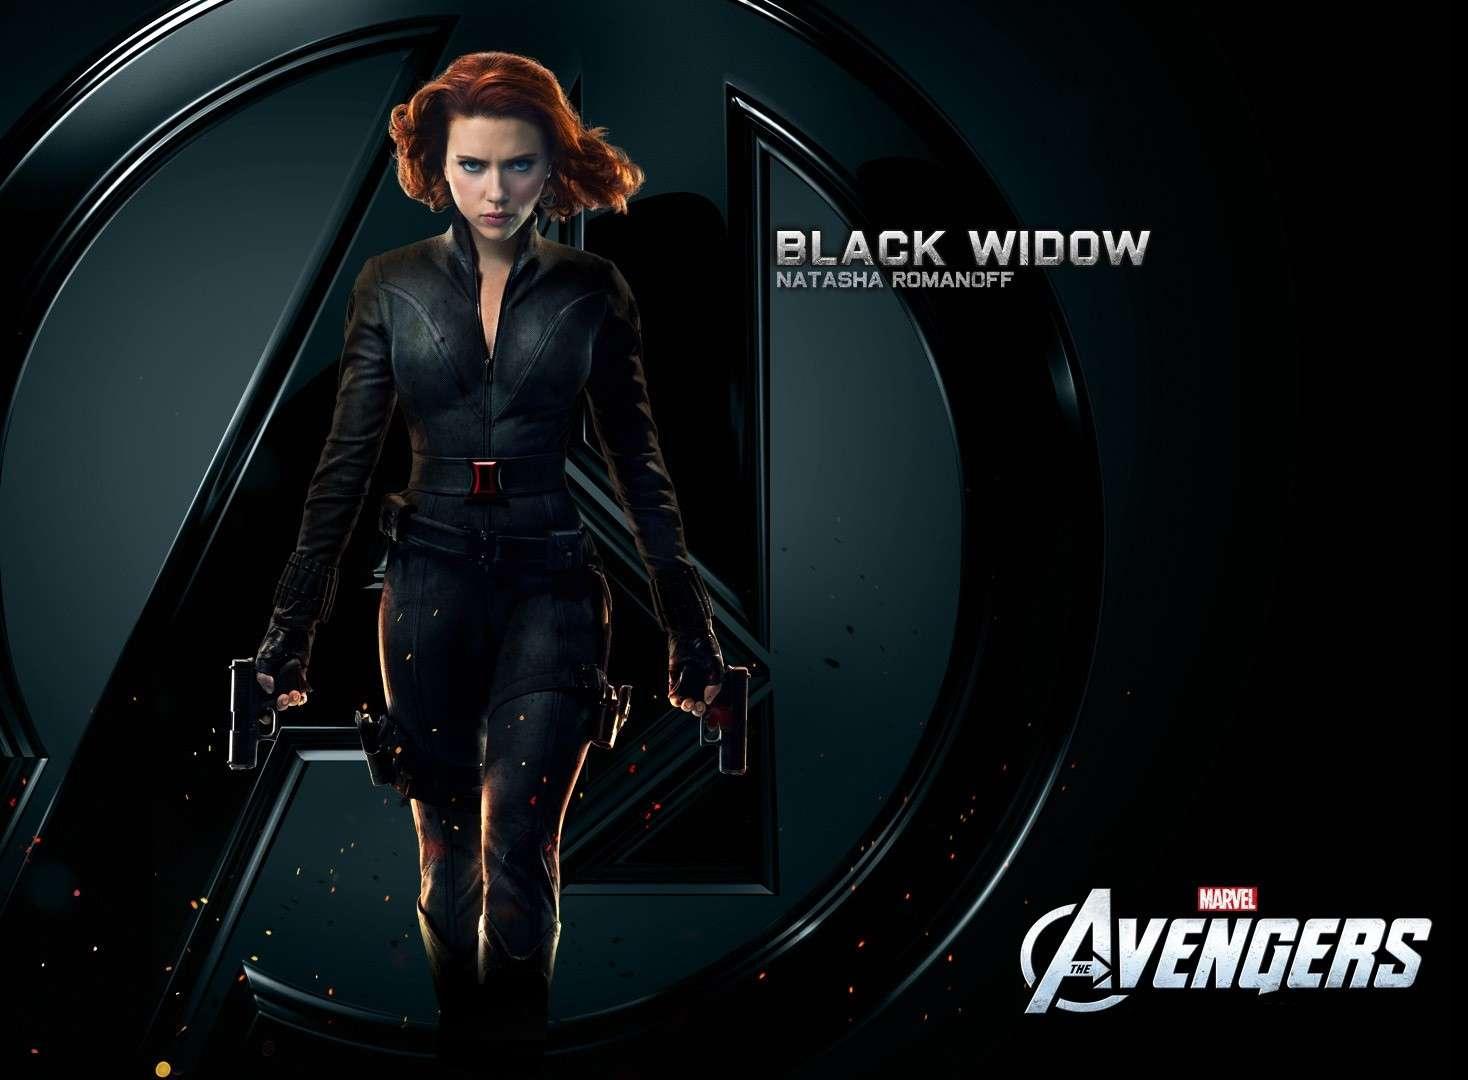 http://1.bp.blogspot.com/-foWZcujWqMo/T8vycsZ0ByI/AAAAAAAAEl8/eU-bDdpVM3o/s1600/Black-Widow-The-Avengers-Wallpaper-black-widow-30737253-1468-1080.jpg